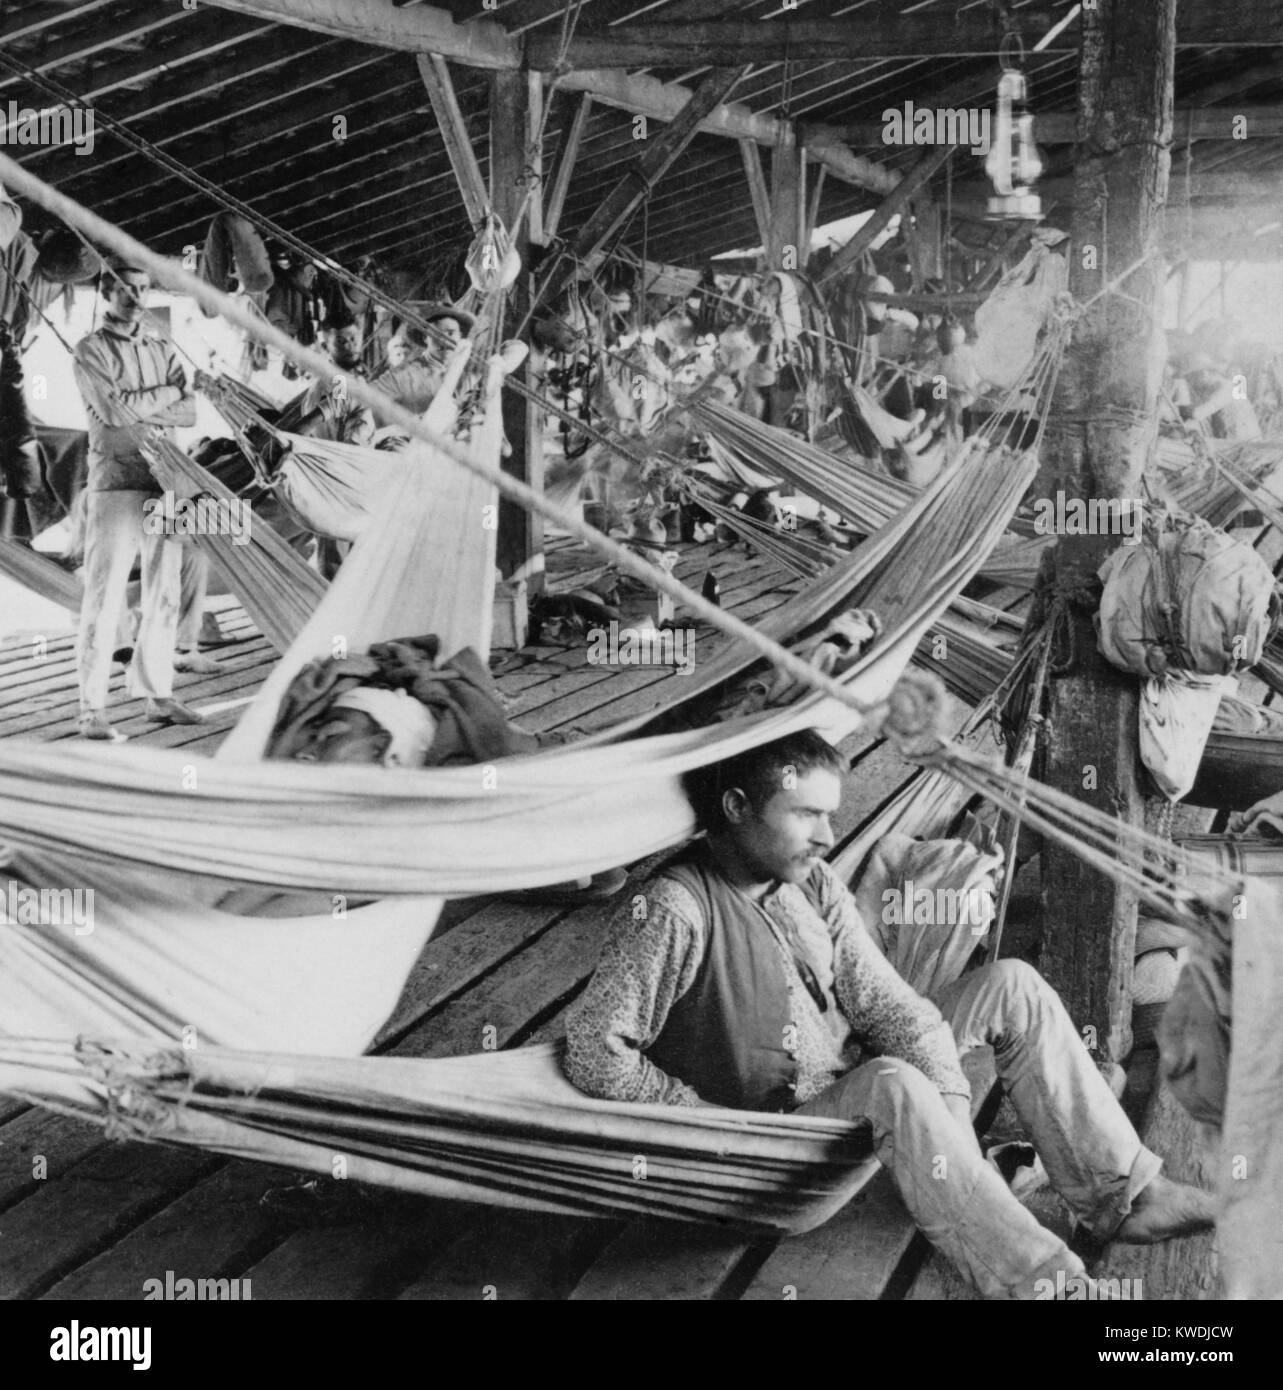 Primitiven Bedingungen in der letzten spanischen Kriegsgefangenenlager in Cienfuegos, Kuba Ca. 1898. Uns vereinbart Die spanische Garnison zurück nach Spanien, um in Bezug auf die Übergabe an Santiago (BSLOC 2017 10 56) Stockfoto